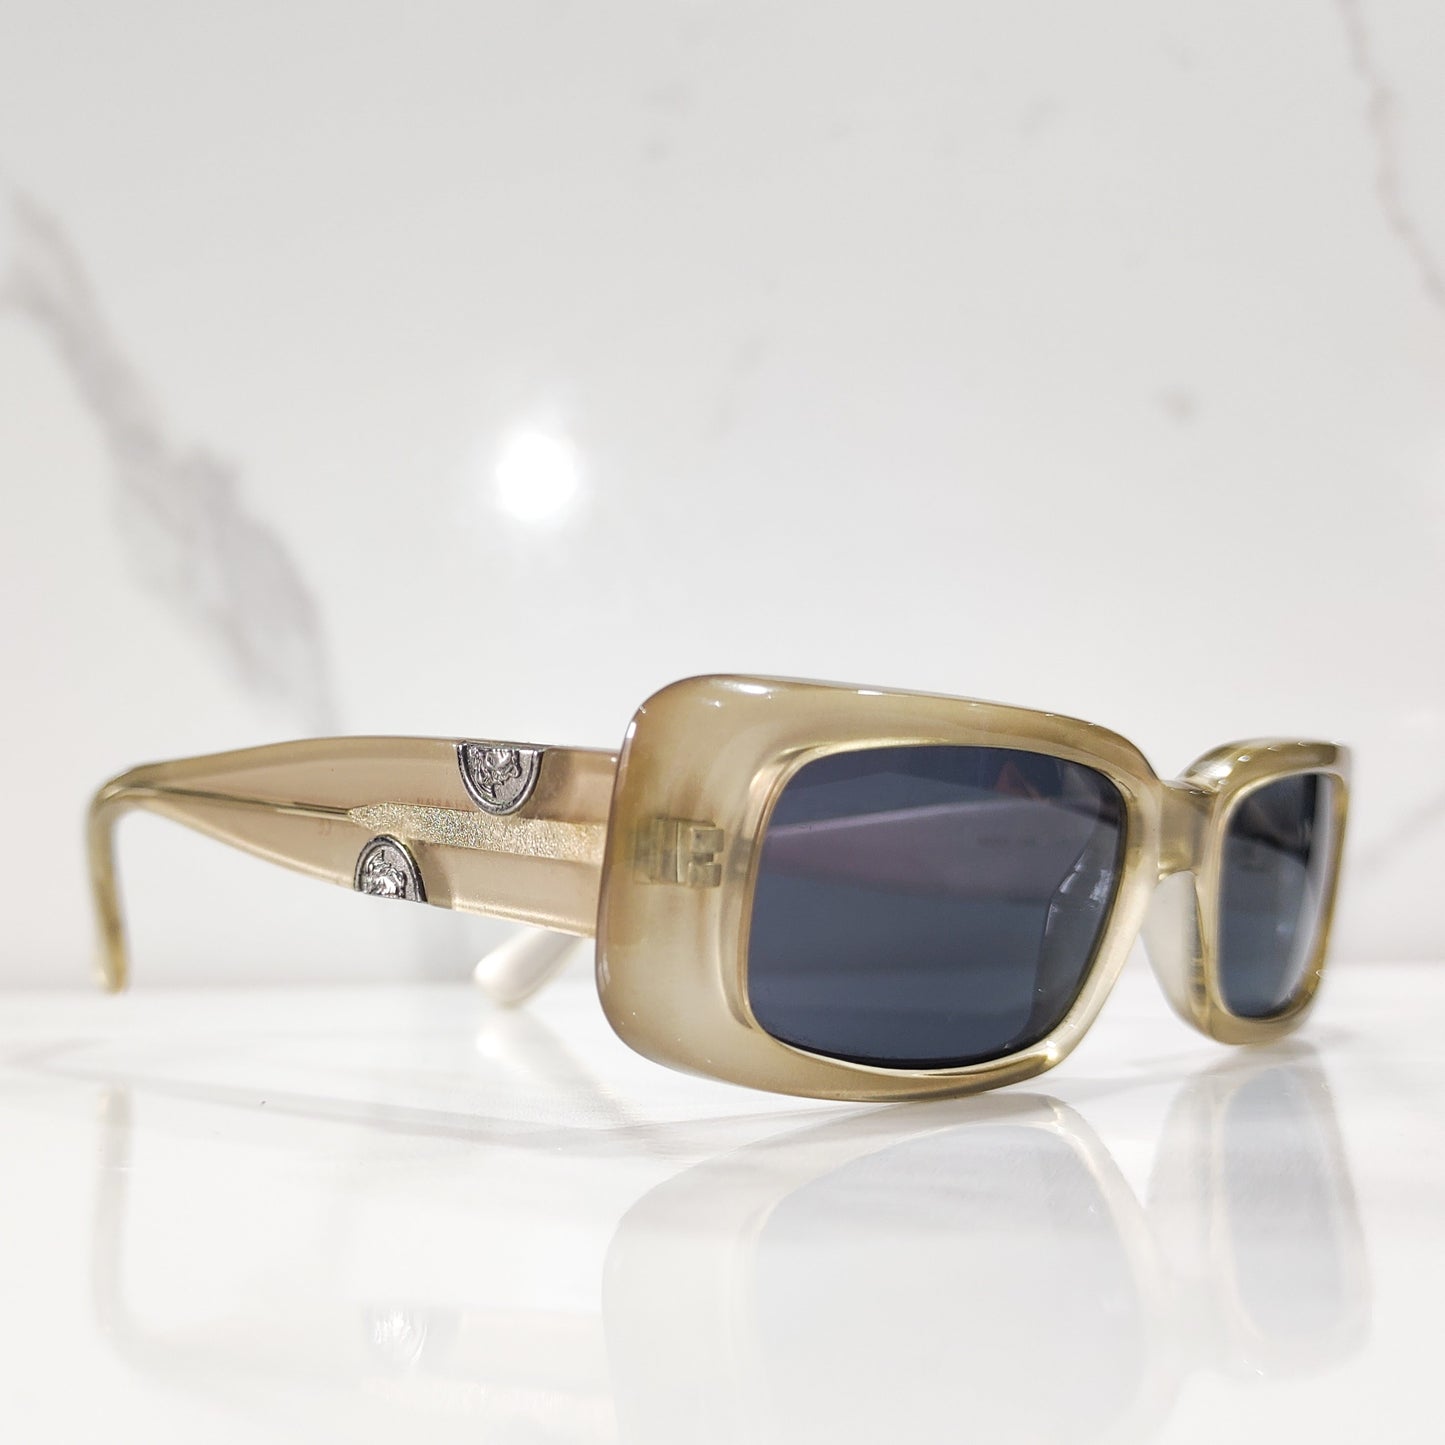 Gianni Versace mod 249 occhiali da sole vintage occhiali lunetta brille anni '90